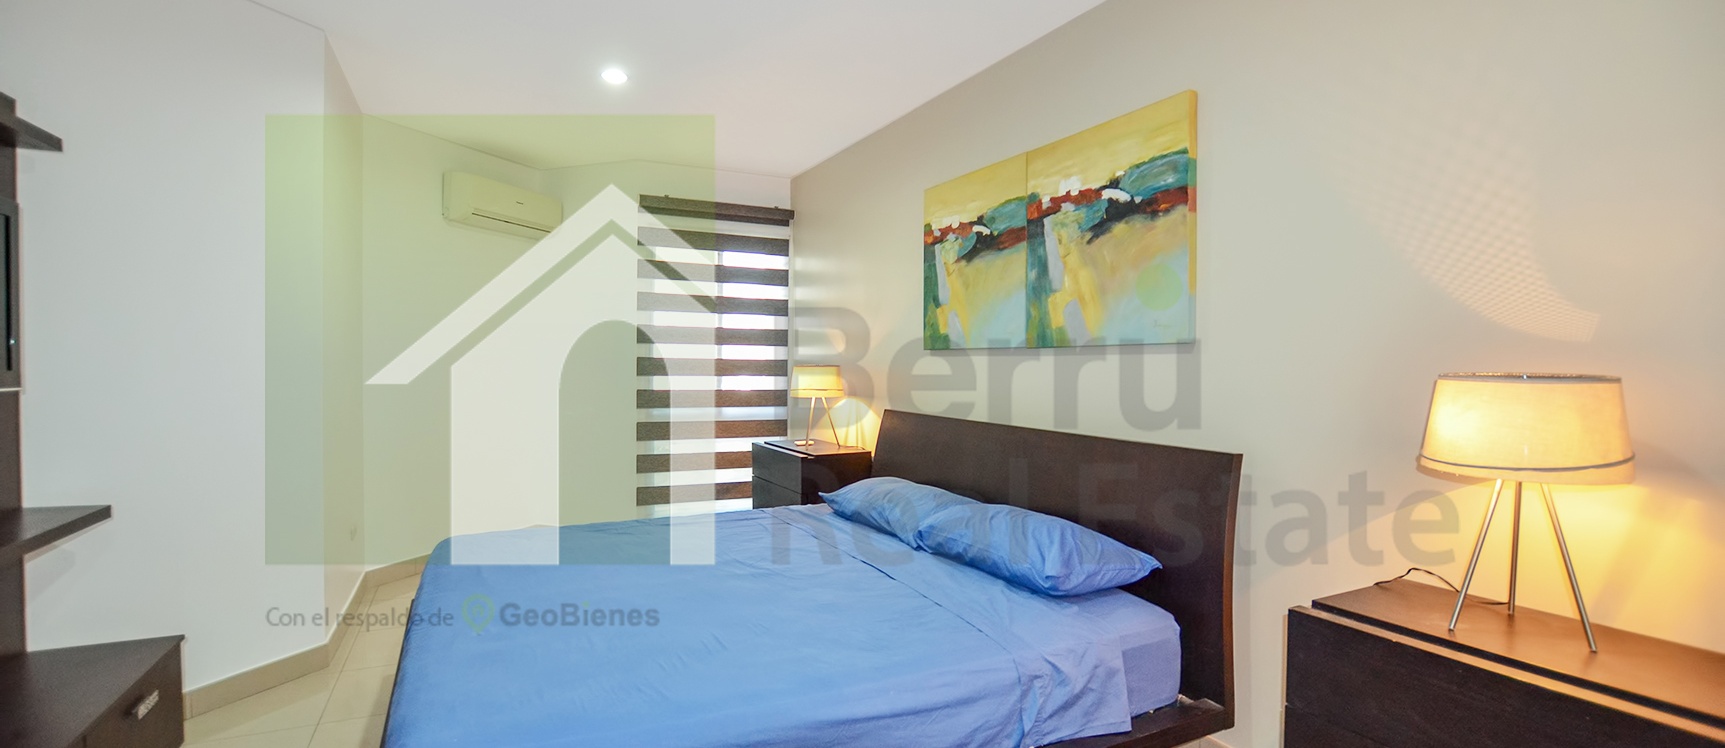 GeoBienes - Departamento en alquiler San Andrés en Samborondón - Plusvalia Guayaquil Casas de venta y alquiler Inmobiliaria Ecuador